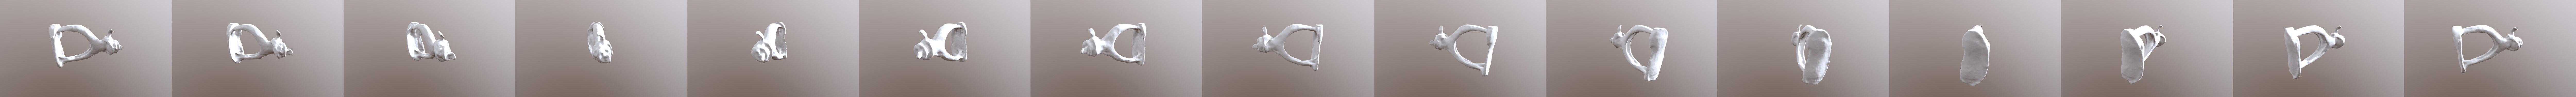 Stapes - ear bone - 3D model by robotron (@robotron) [69dfcce]